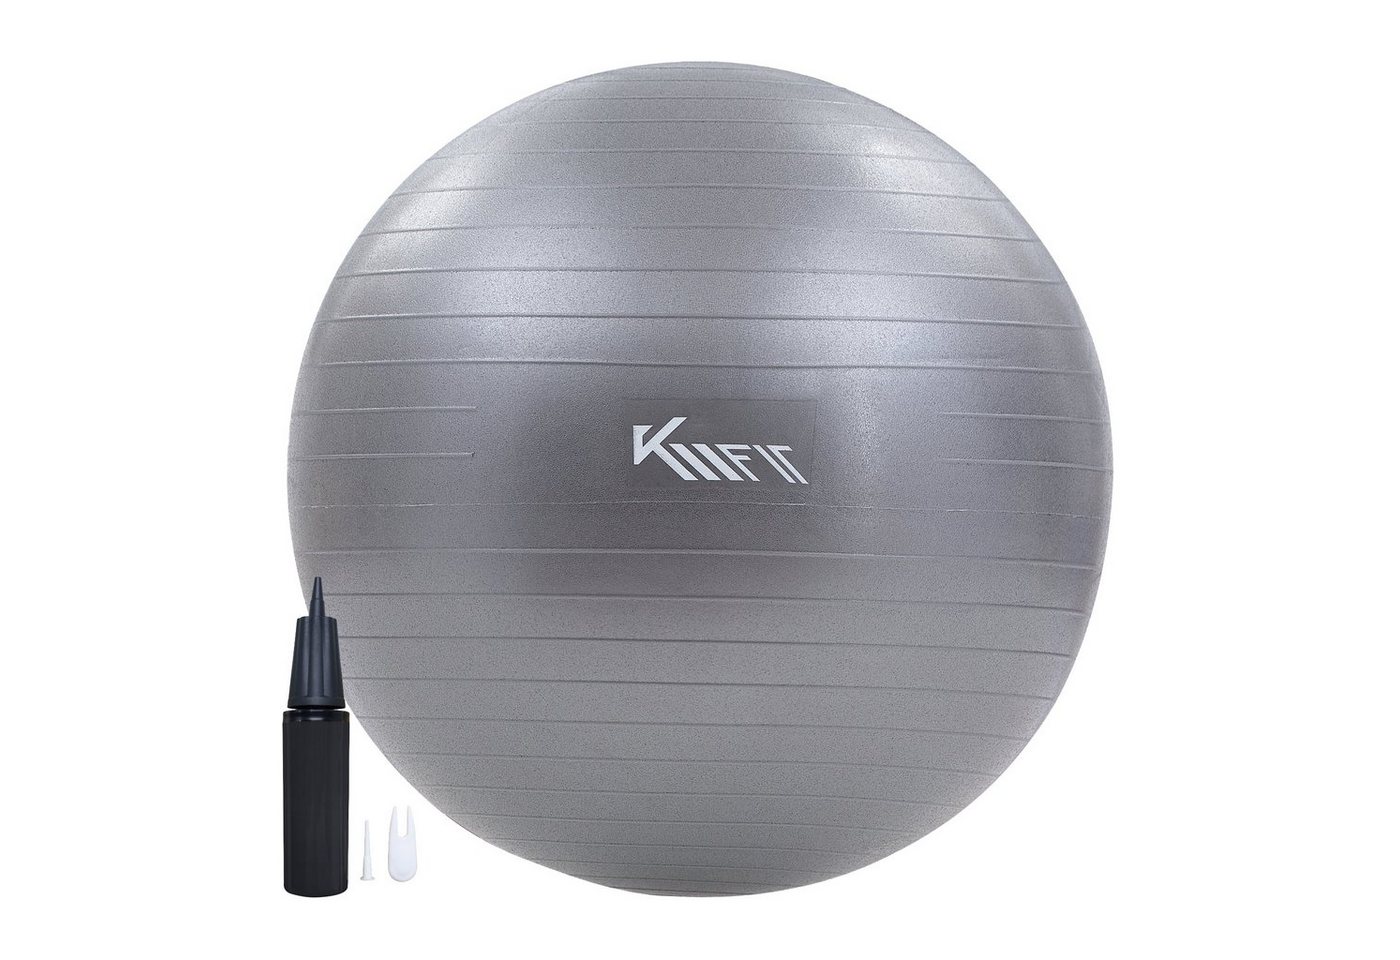 KM - Fit Gymnastikball Trainingsball Sitzball für Fitness,Yoga,Gymnastik 65 cm (mit Luft-Pumpe, Grau), Max. Belastbarkeit: 300 kg von KM - Fit